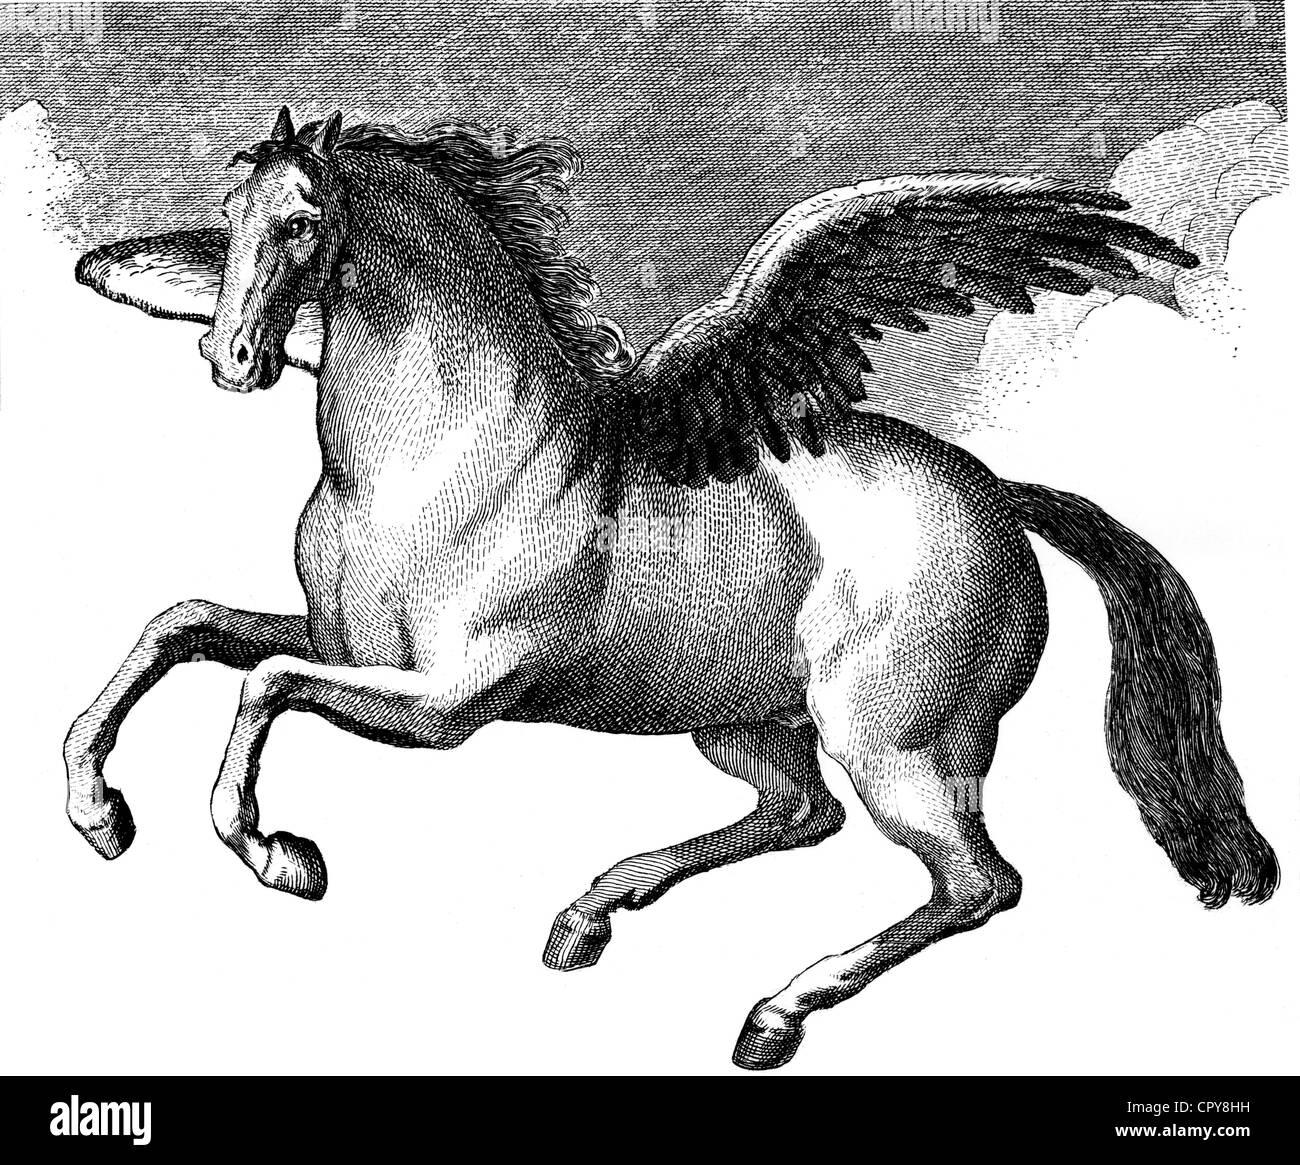 Pegasus, grec, figure légendaire cheval ailé, basé sur gravure sur cuivre, milieu du 18e siècle, l'artiste n'a pas d'auteur pour être effacé Banque D'Images